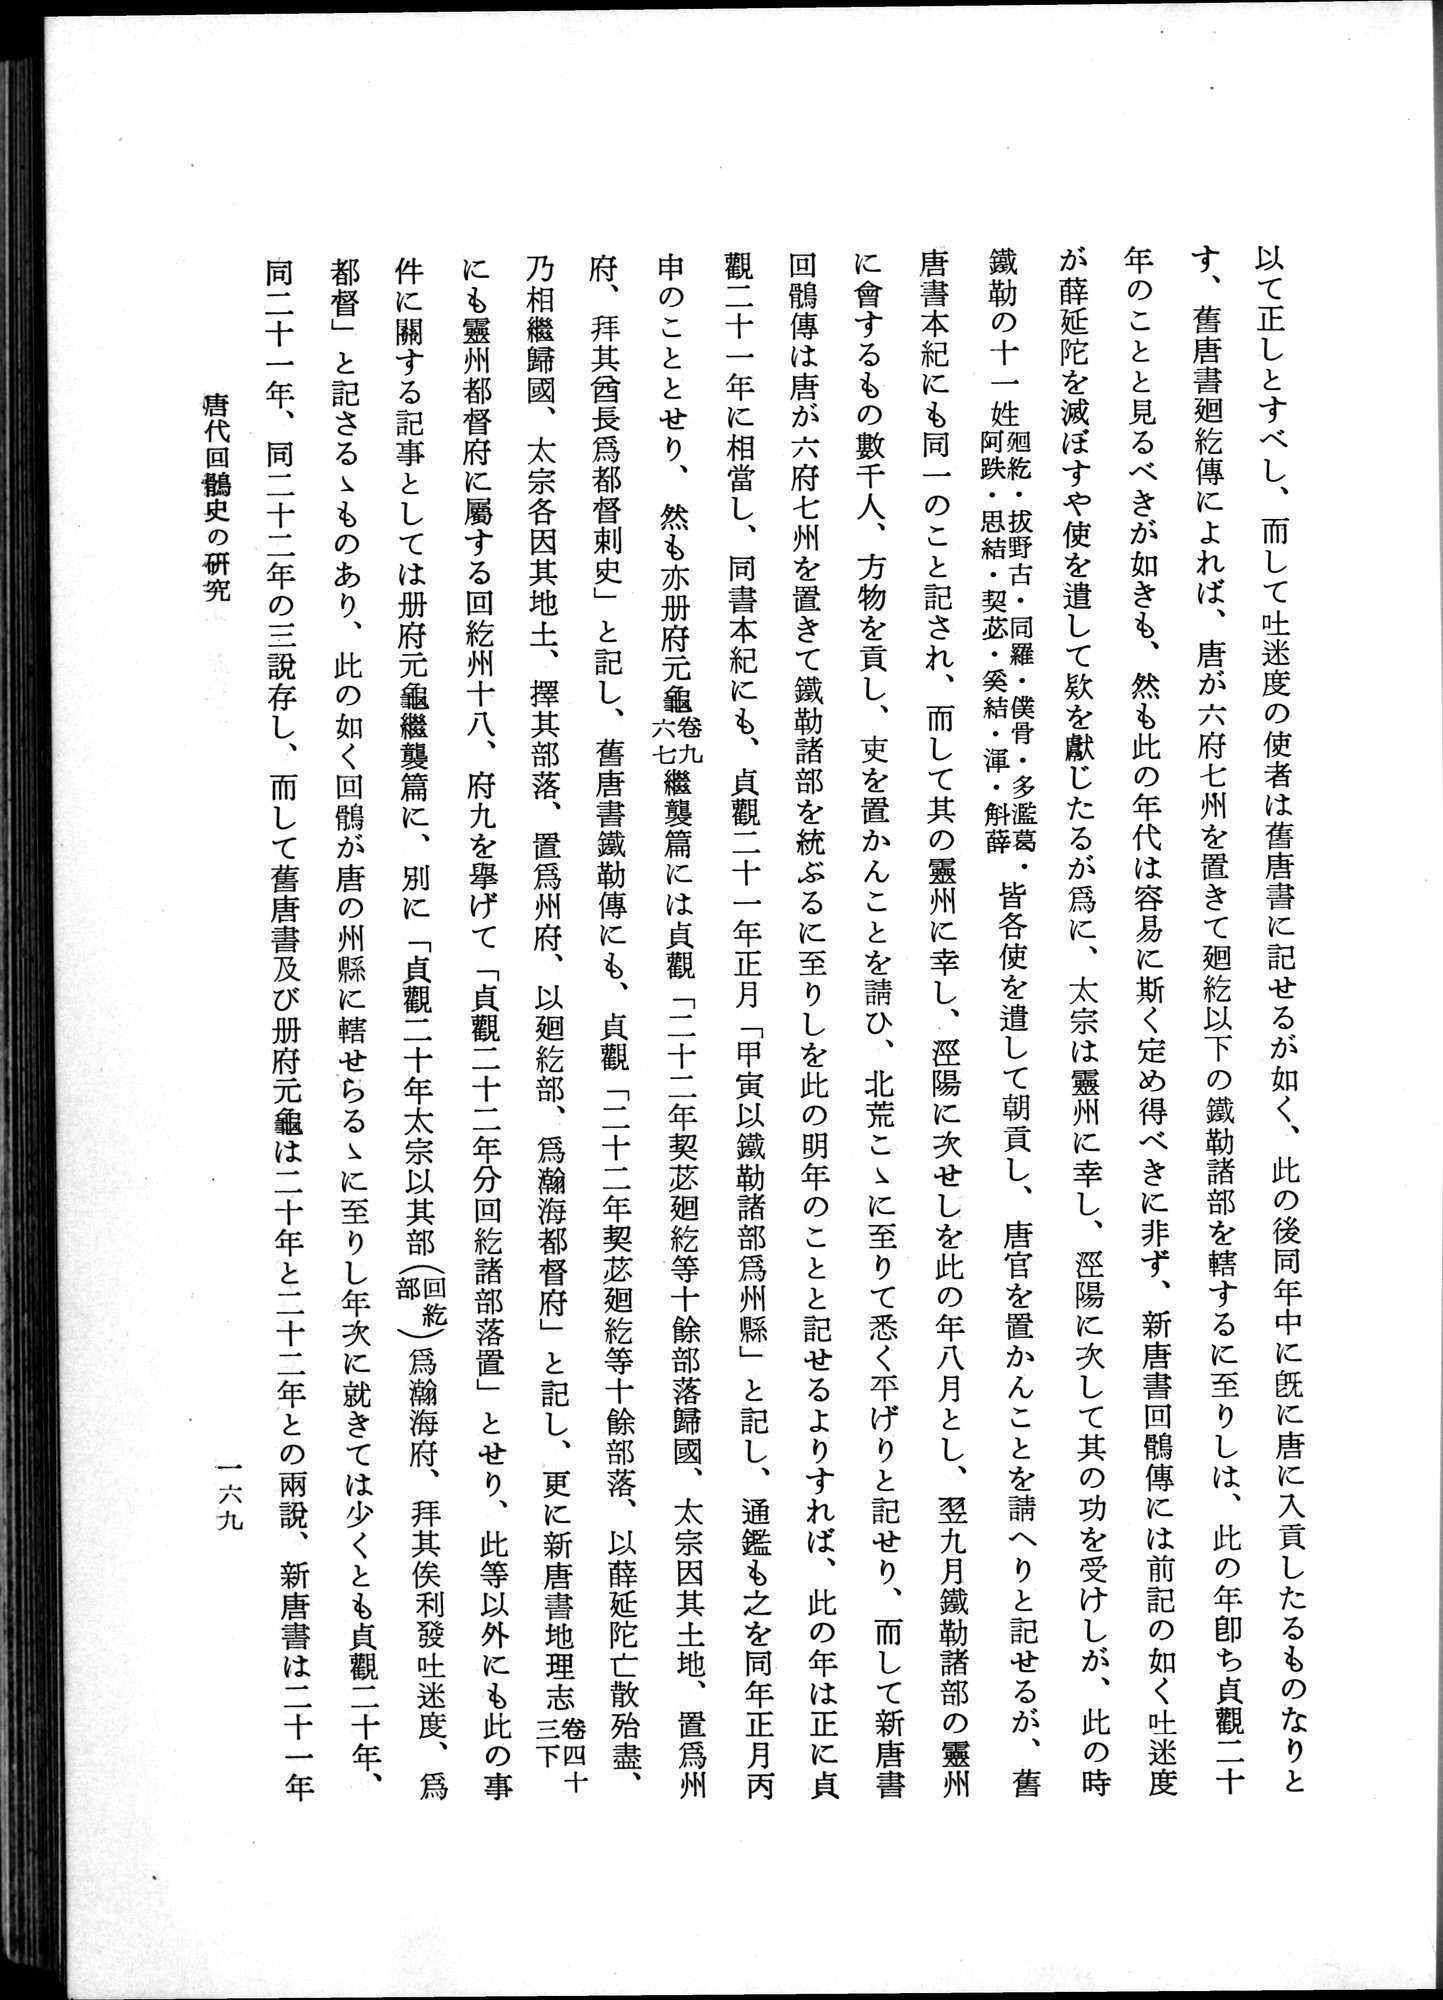 羽田博士史学論文集 : vol.1 / Page 207 (Grayscale High Resolution Image)